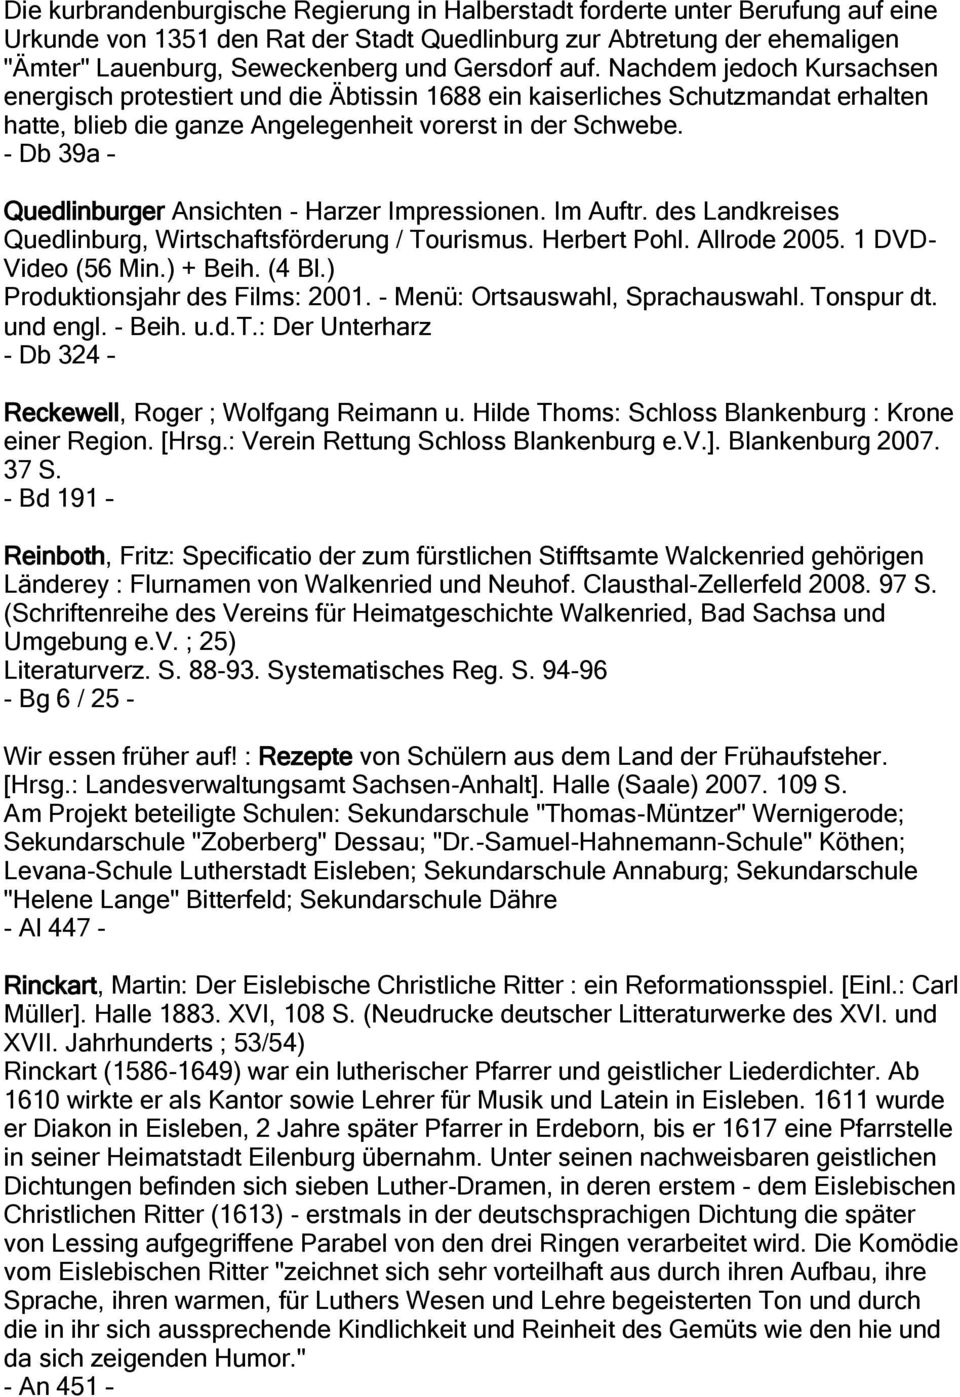 - Db 39a Quedlinburger Ansichten - Harzer Impressionen. Im Auftr. des Landkreises Quedlinburg, Wirtschaftsförderung / Tourismus. Herbert Pohl. Allrode 2005. 1 DVD- Video (56 Min.) + Beih. (4 Bl.